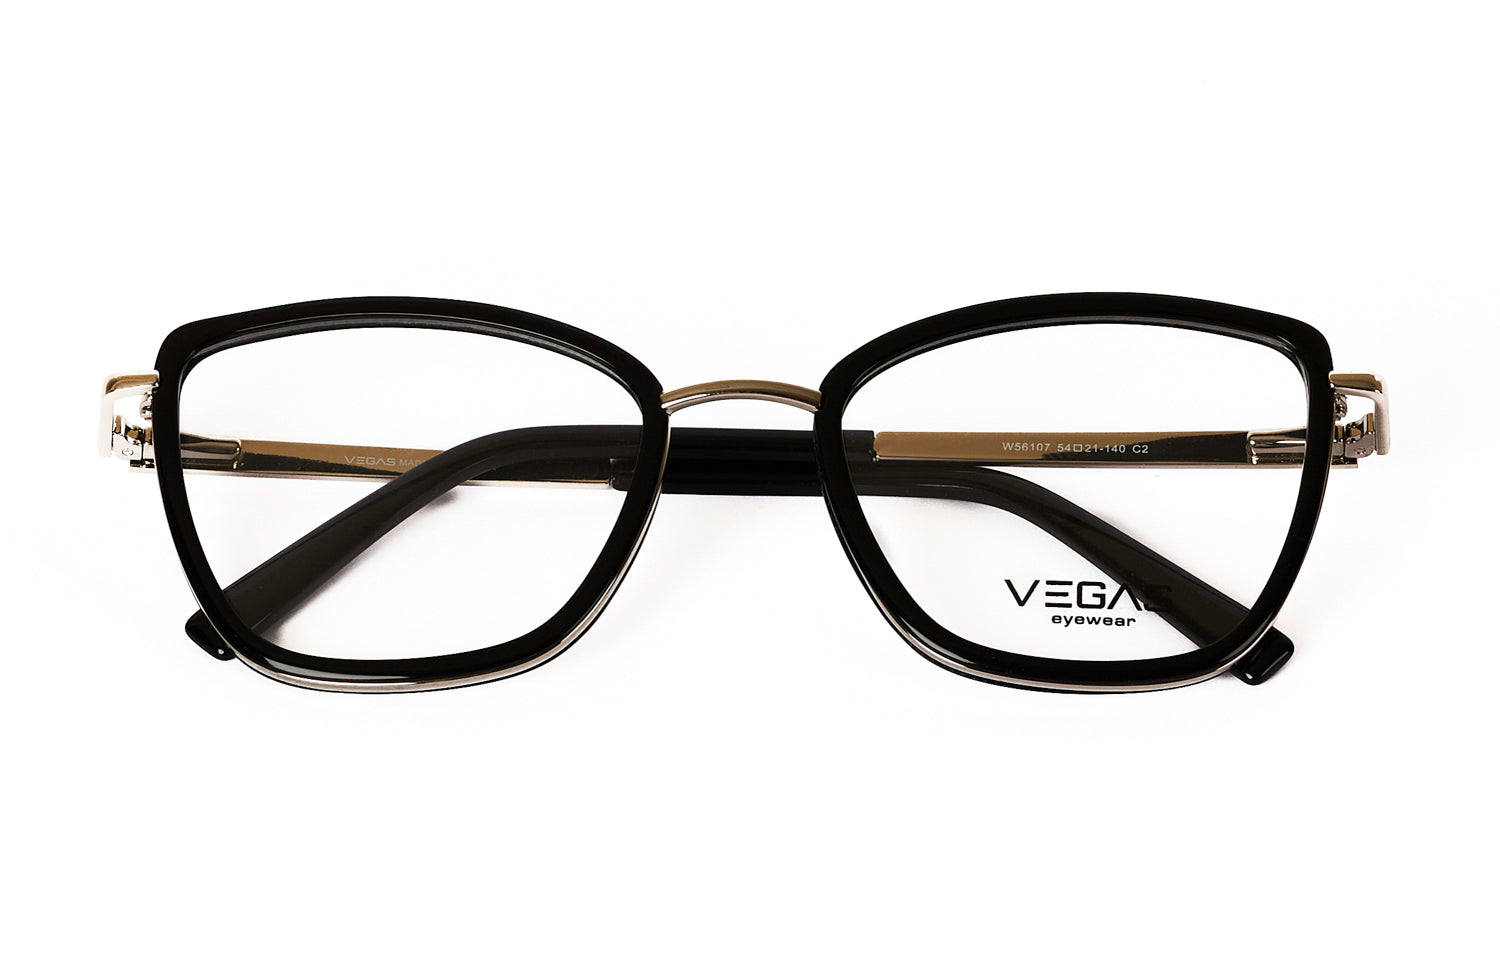 VEGAS W56107 - COC Eyewear